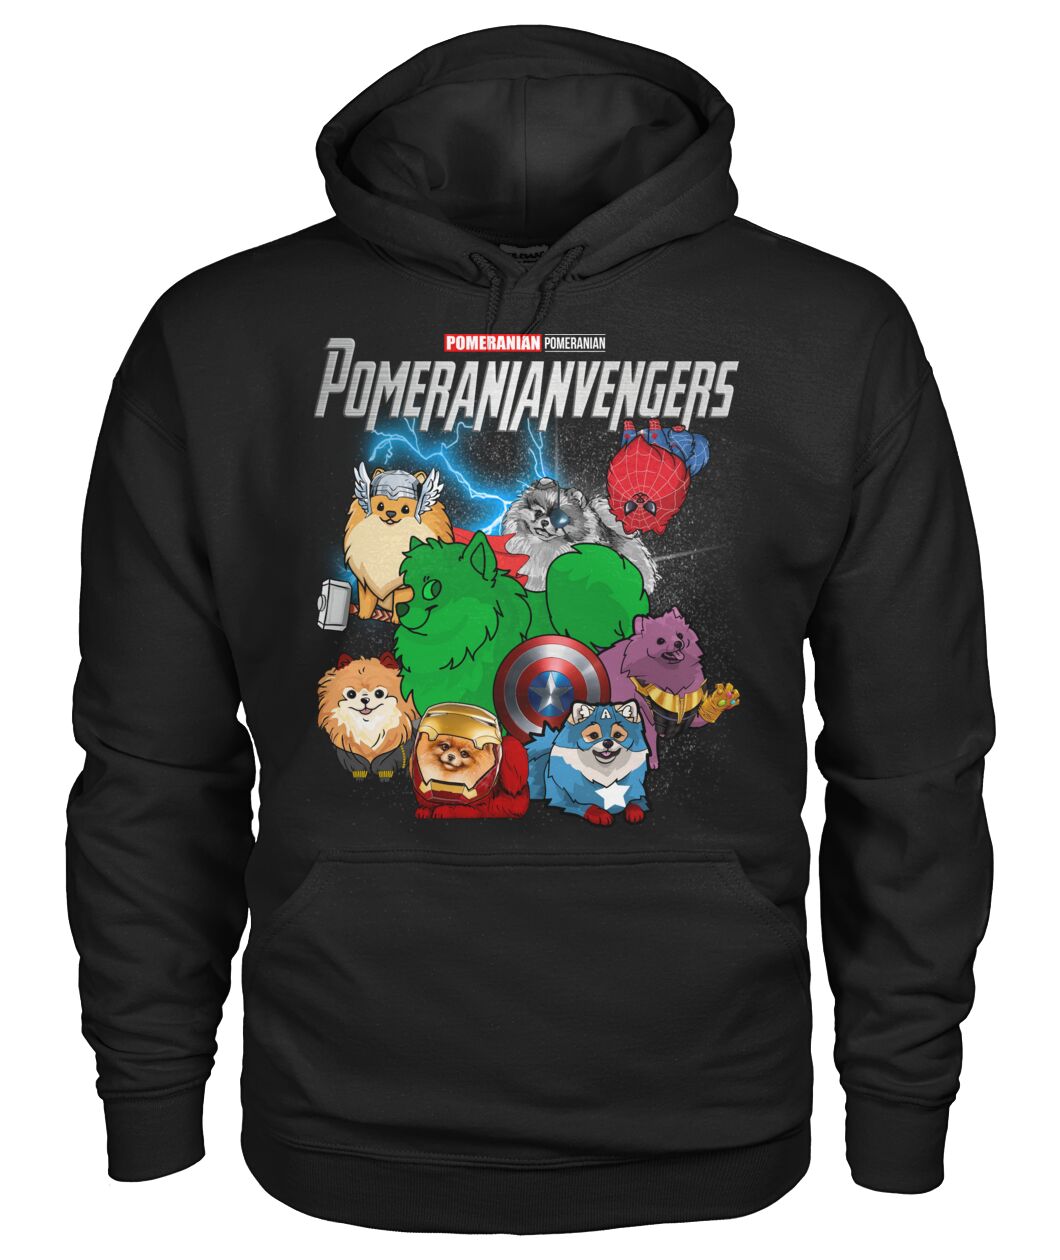 Pomeranianvengers 3D Hoodie, Shirt 20